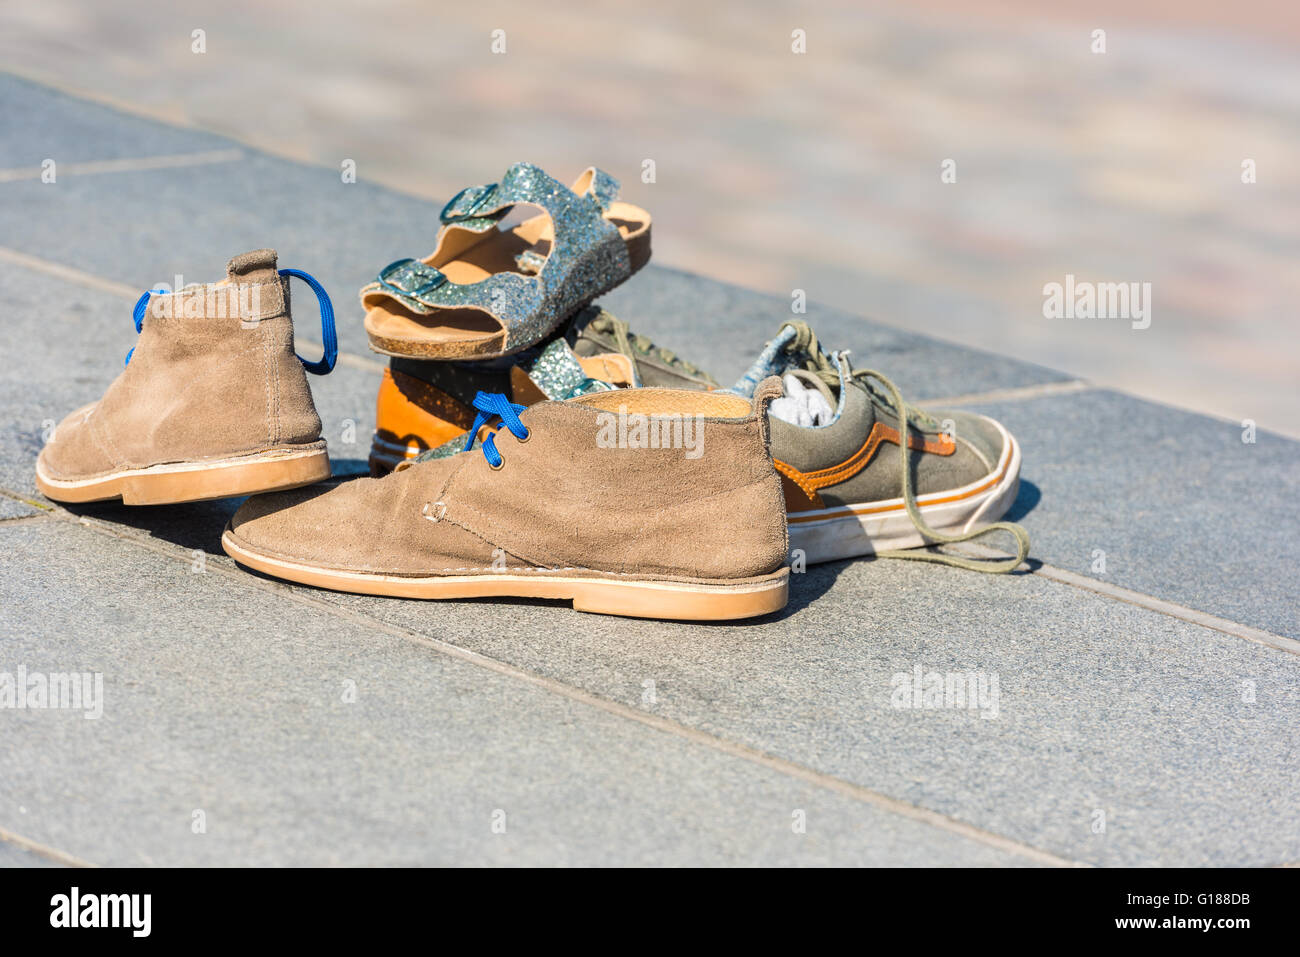 Chaussures de la famille laissée sur un trottoir dans une rue. Plan horizontal Banque D'Images